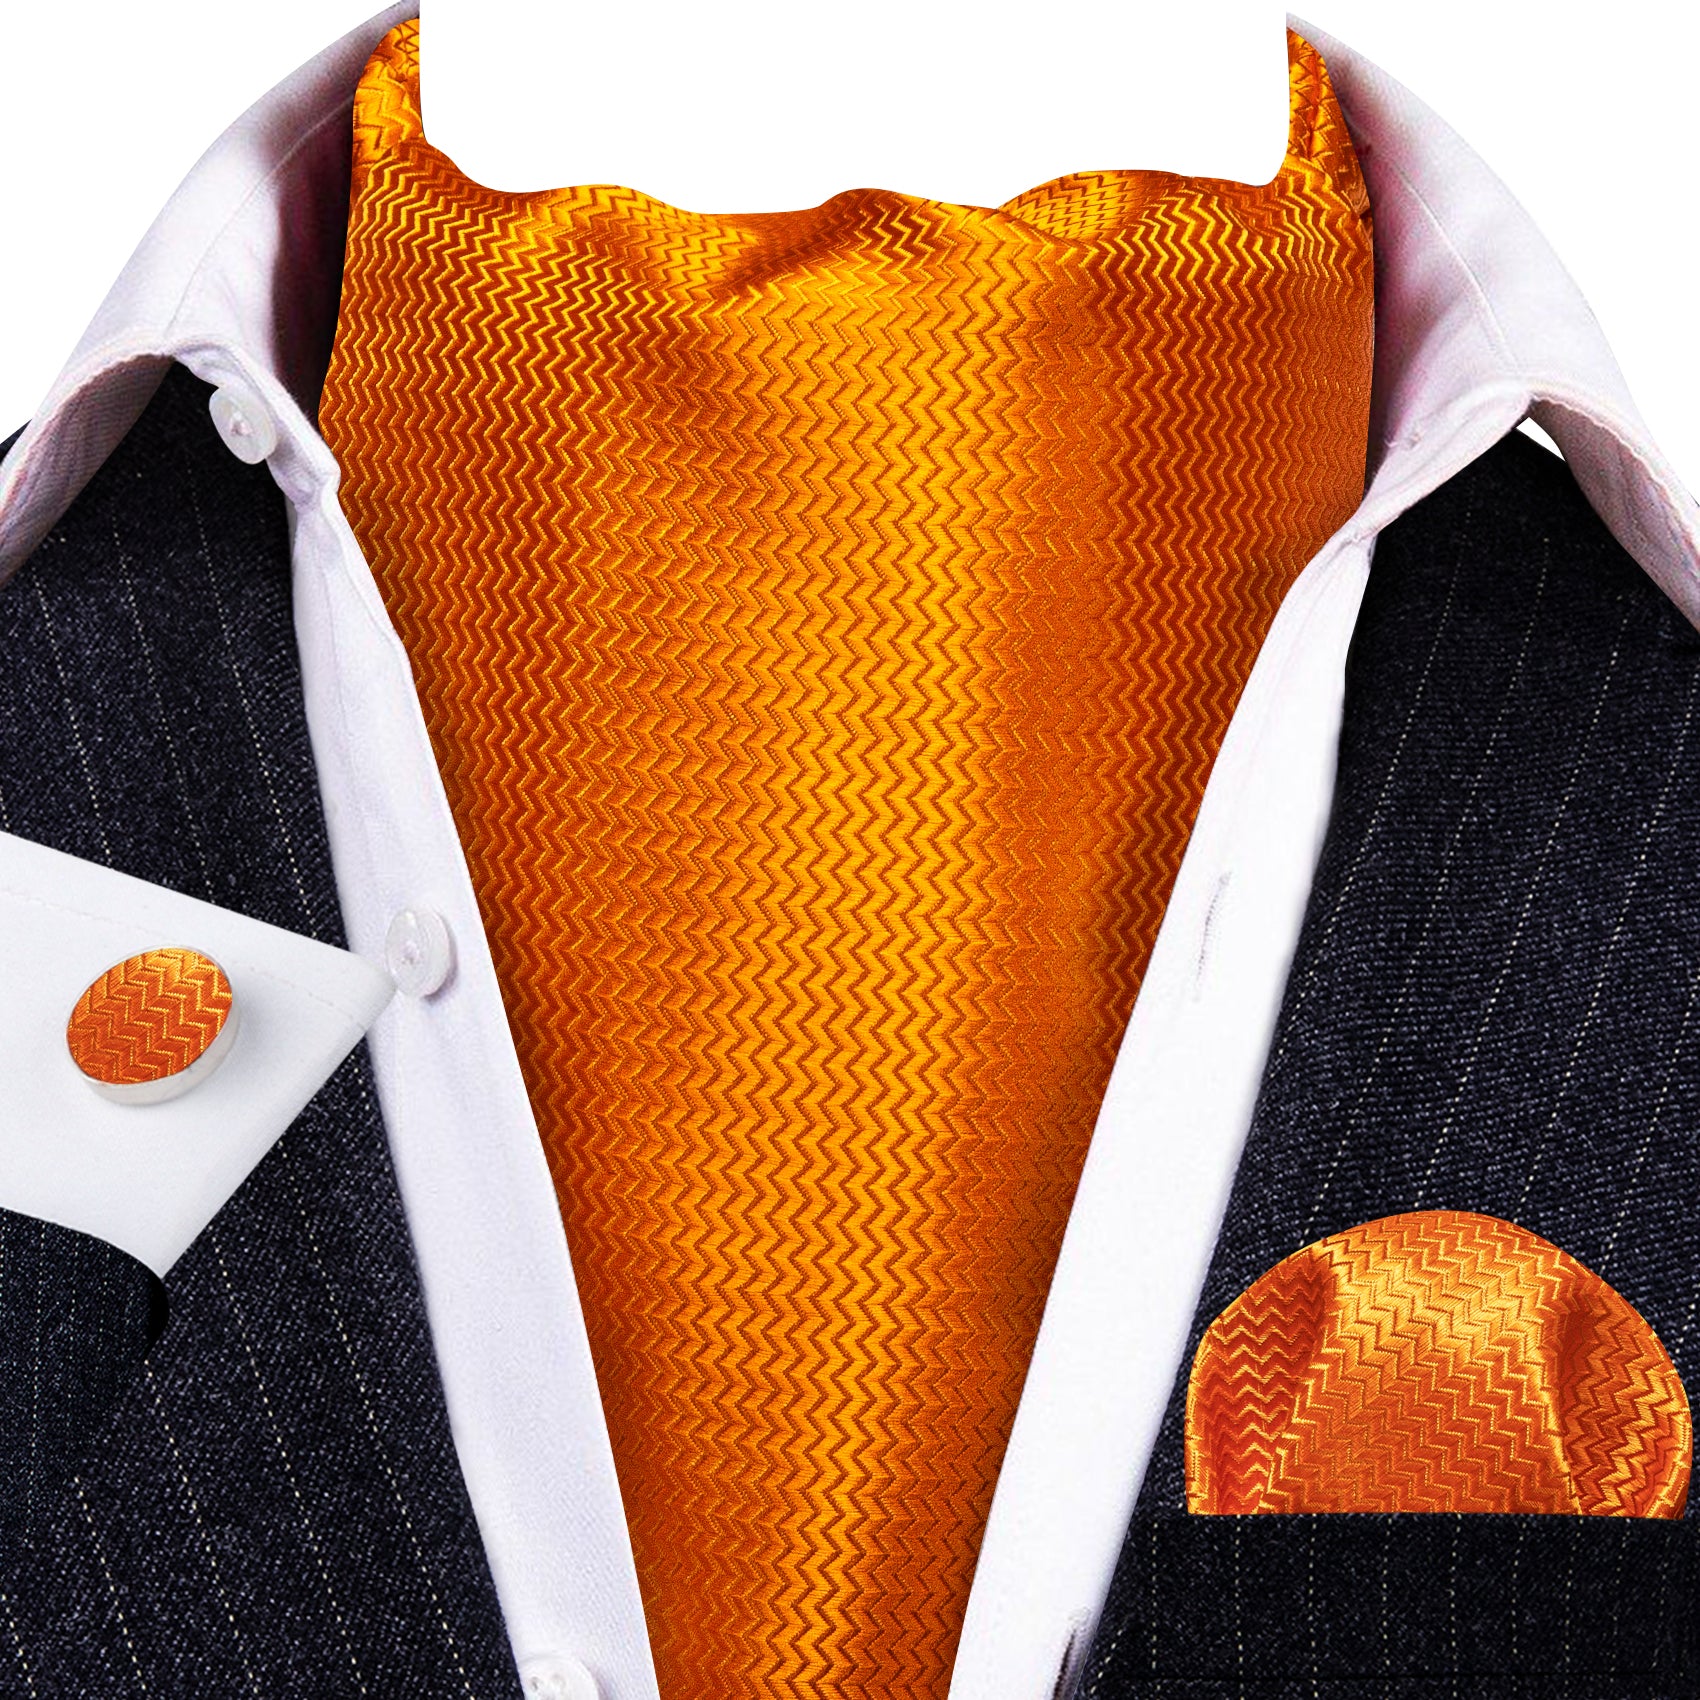 Barry.Wang Men's Tie Orange Solid Silk Ascot Tie Hanky Cufflinks Set